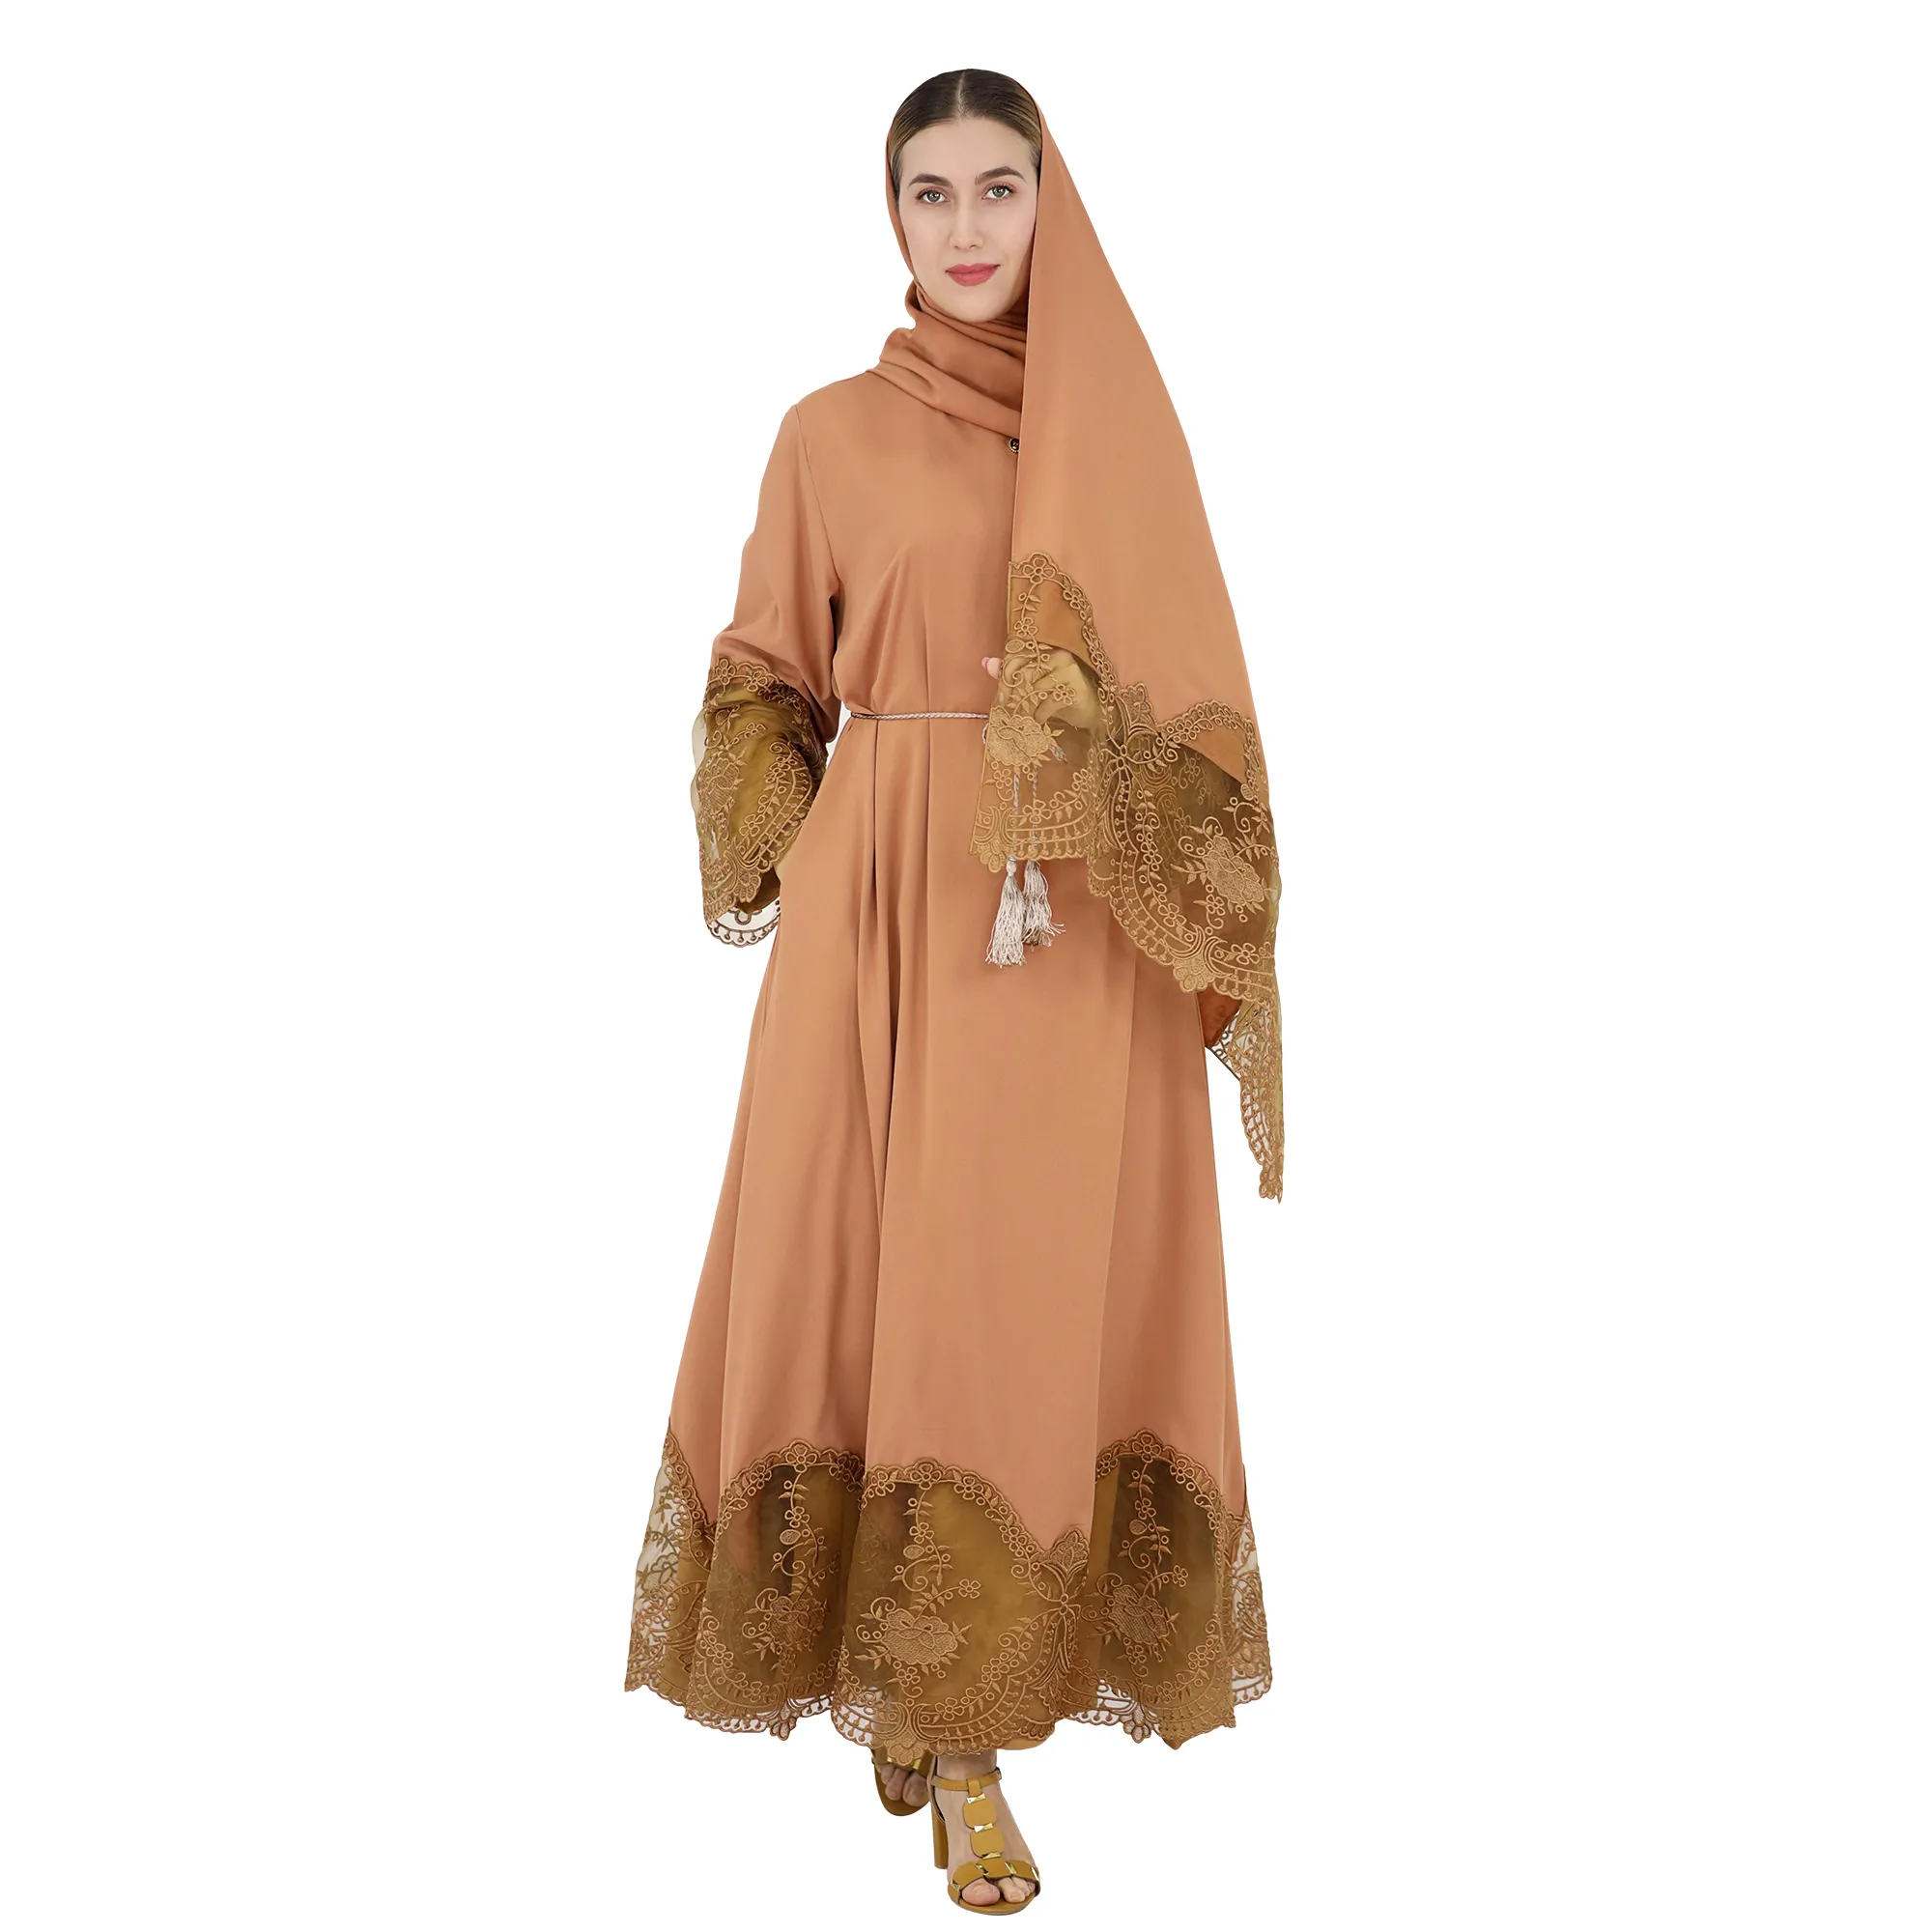 Dubai müslüman kadınlar Abaya tasarımlar moda zarif islam giyim nakış dantel tasarım astarsız